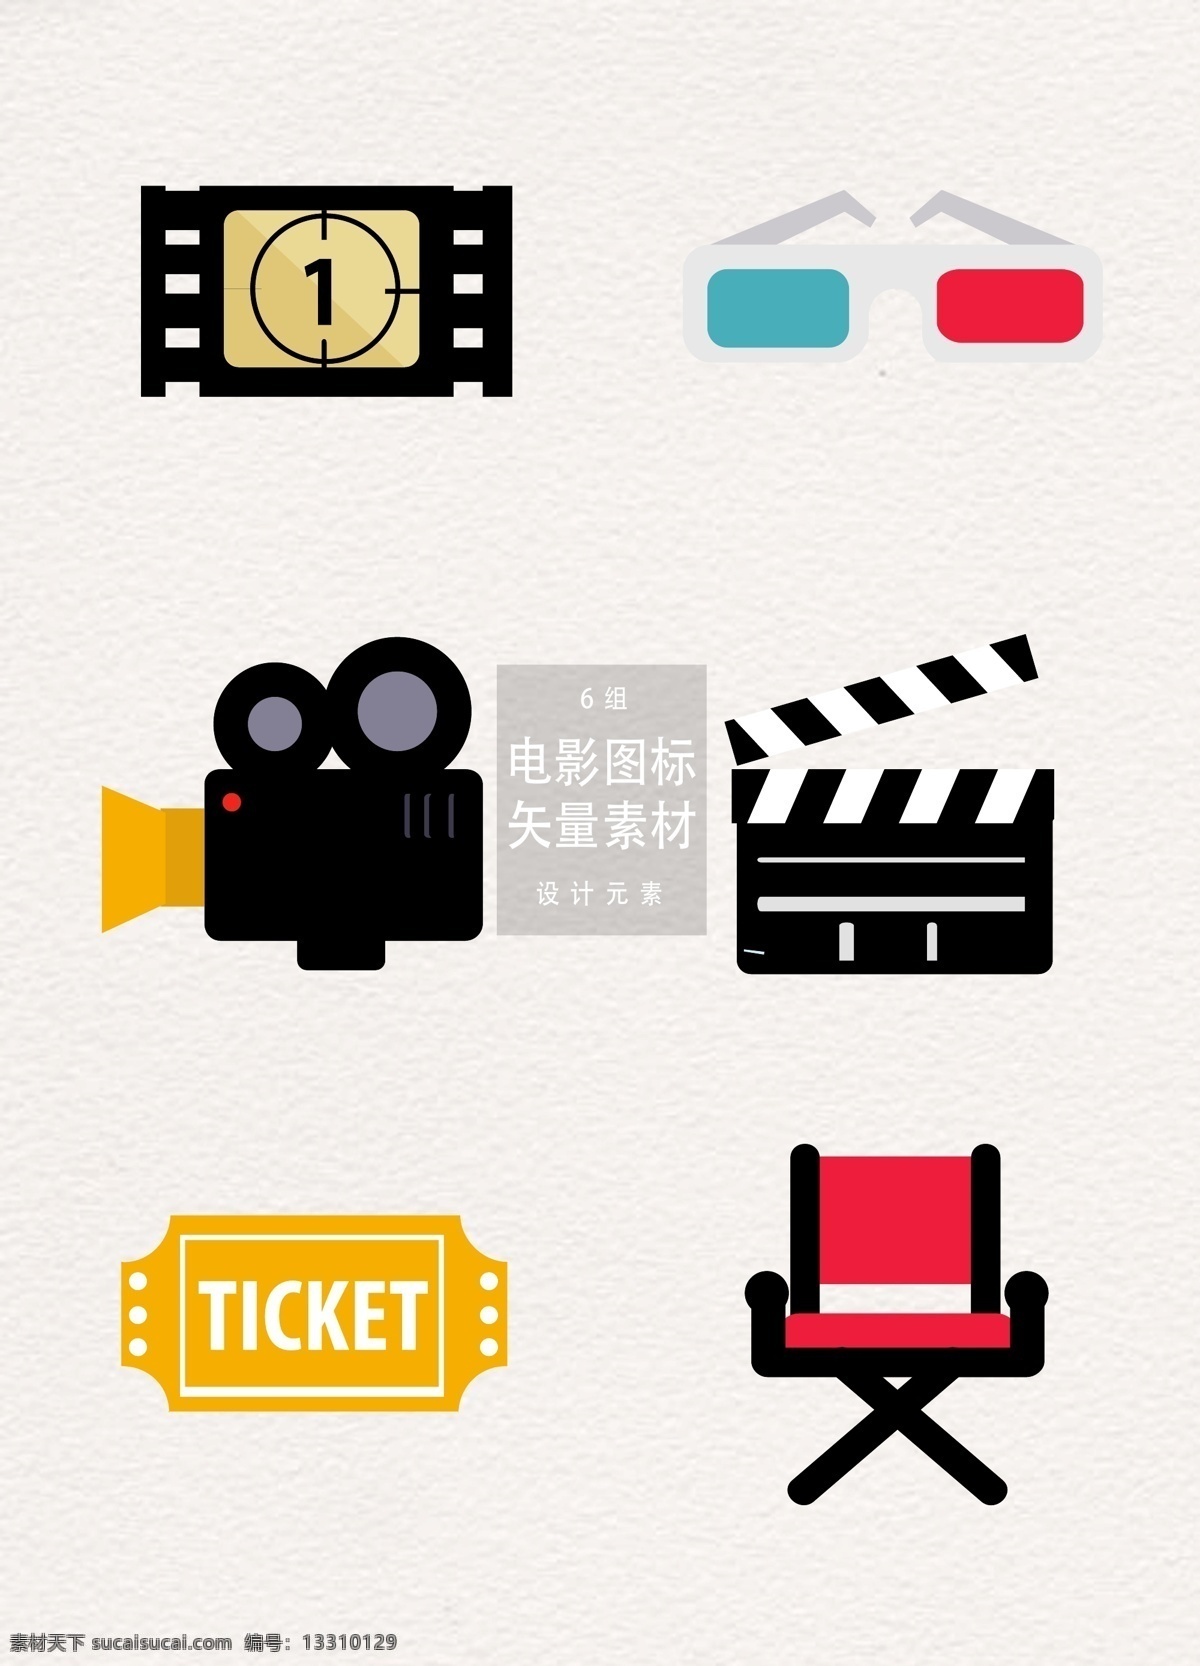 创意 电影 图标 矢量 矢量素材 ai素材 椅子 电影票 电影节 国际电影节 电影图标 放映机 录影机 3d眼镜